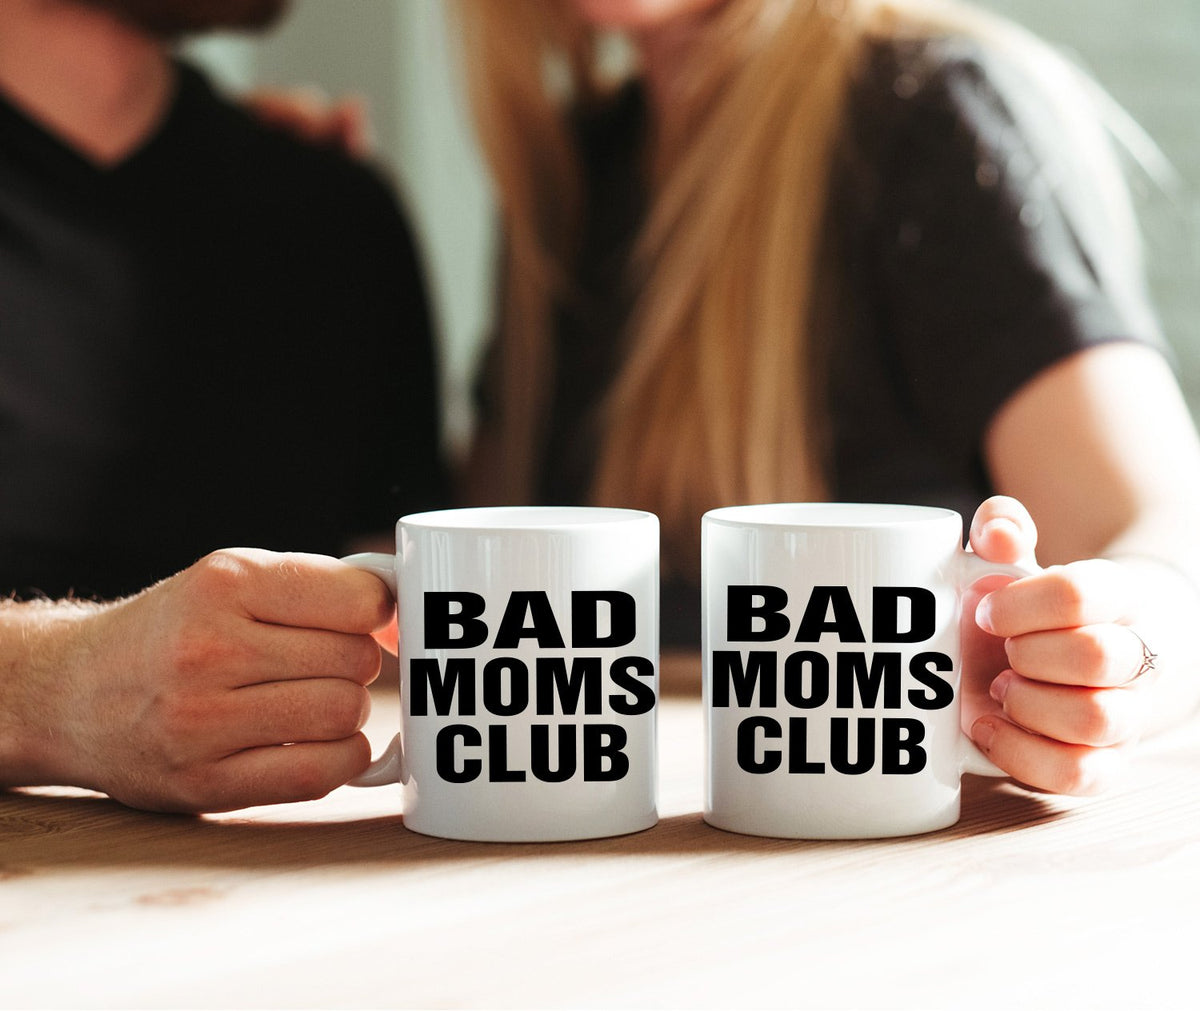 Bad Moms Club - Ceramic Coffee Mug